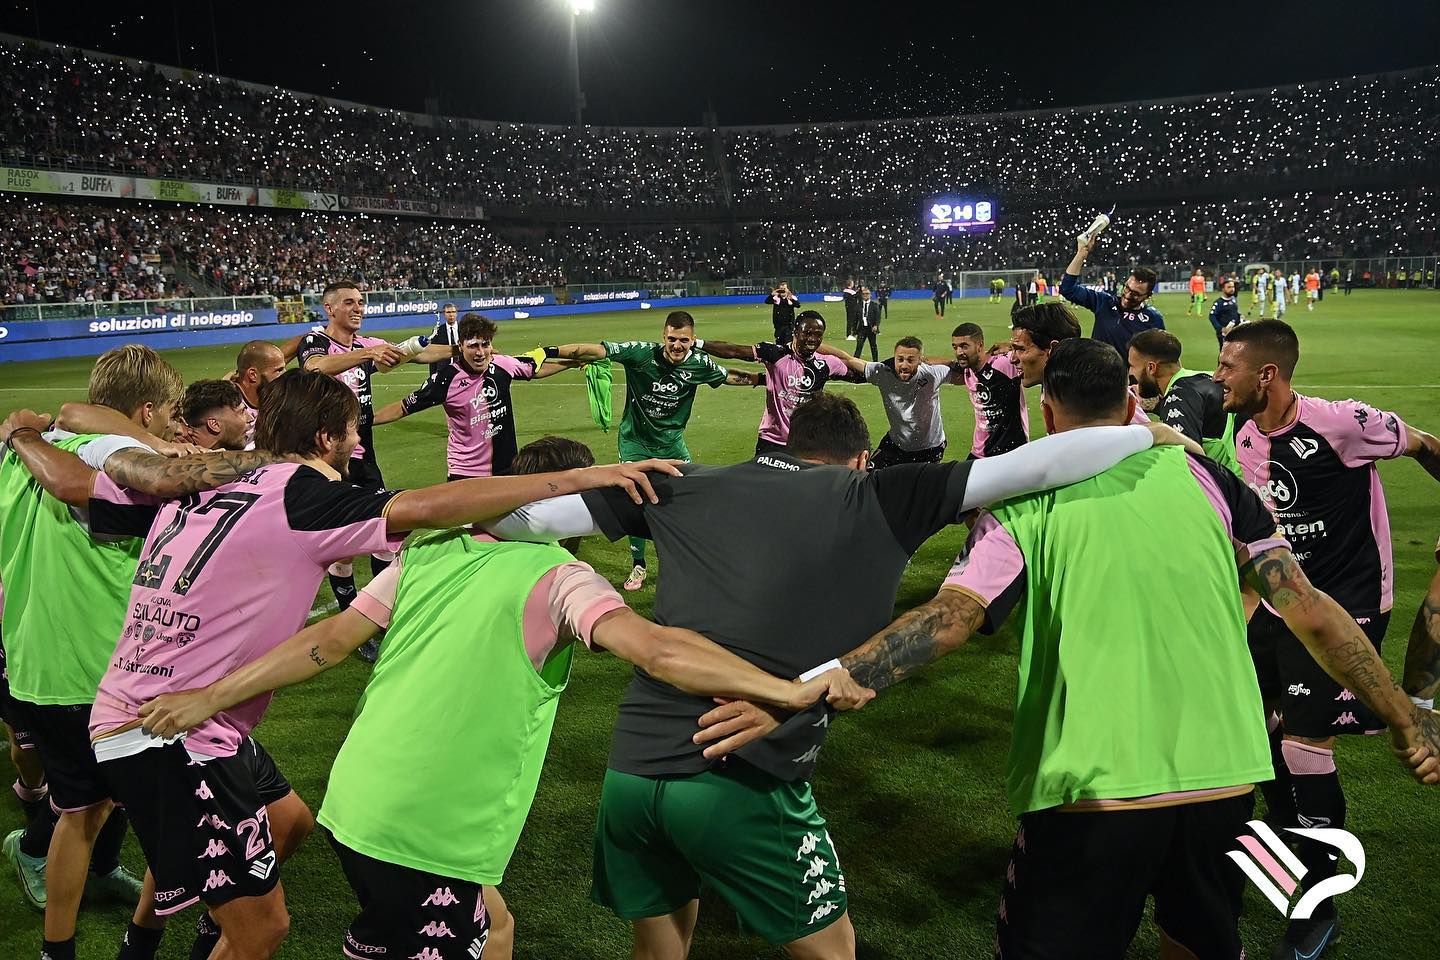 Serie C, finale playoff: sfida stellare tra Padova e Palermo